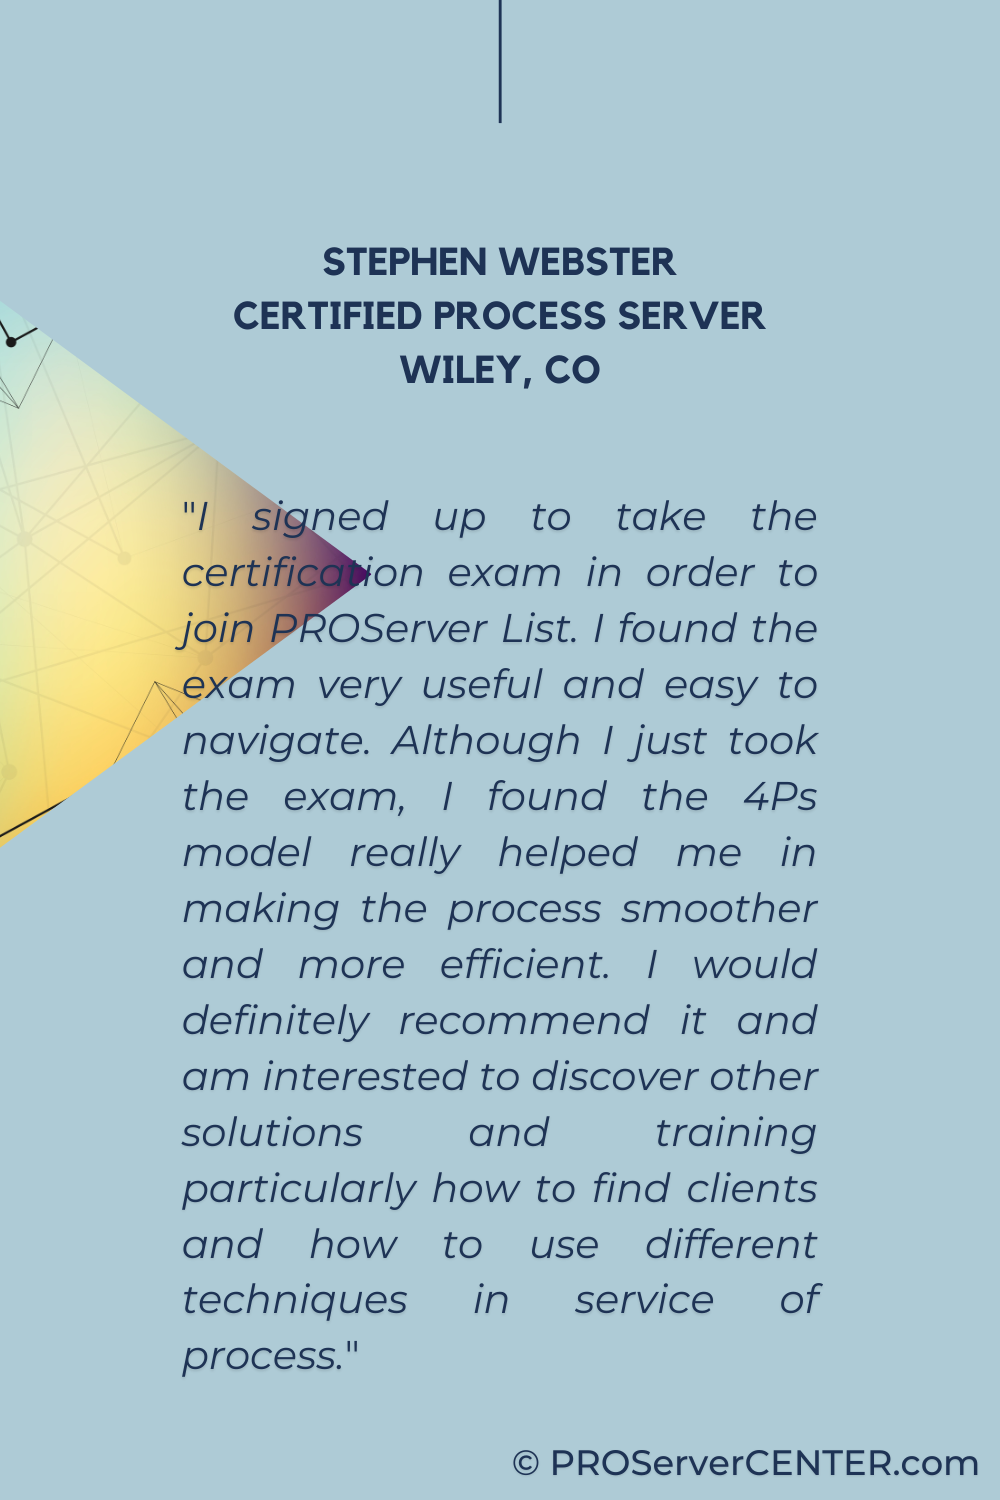 webster, certified process server